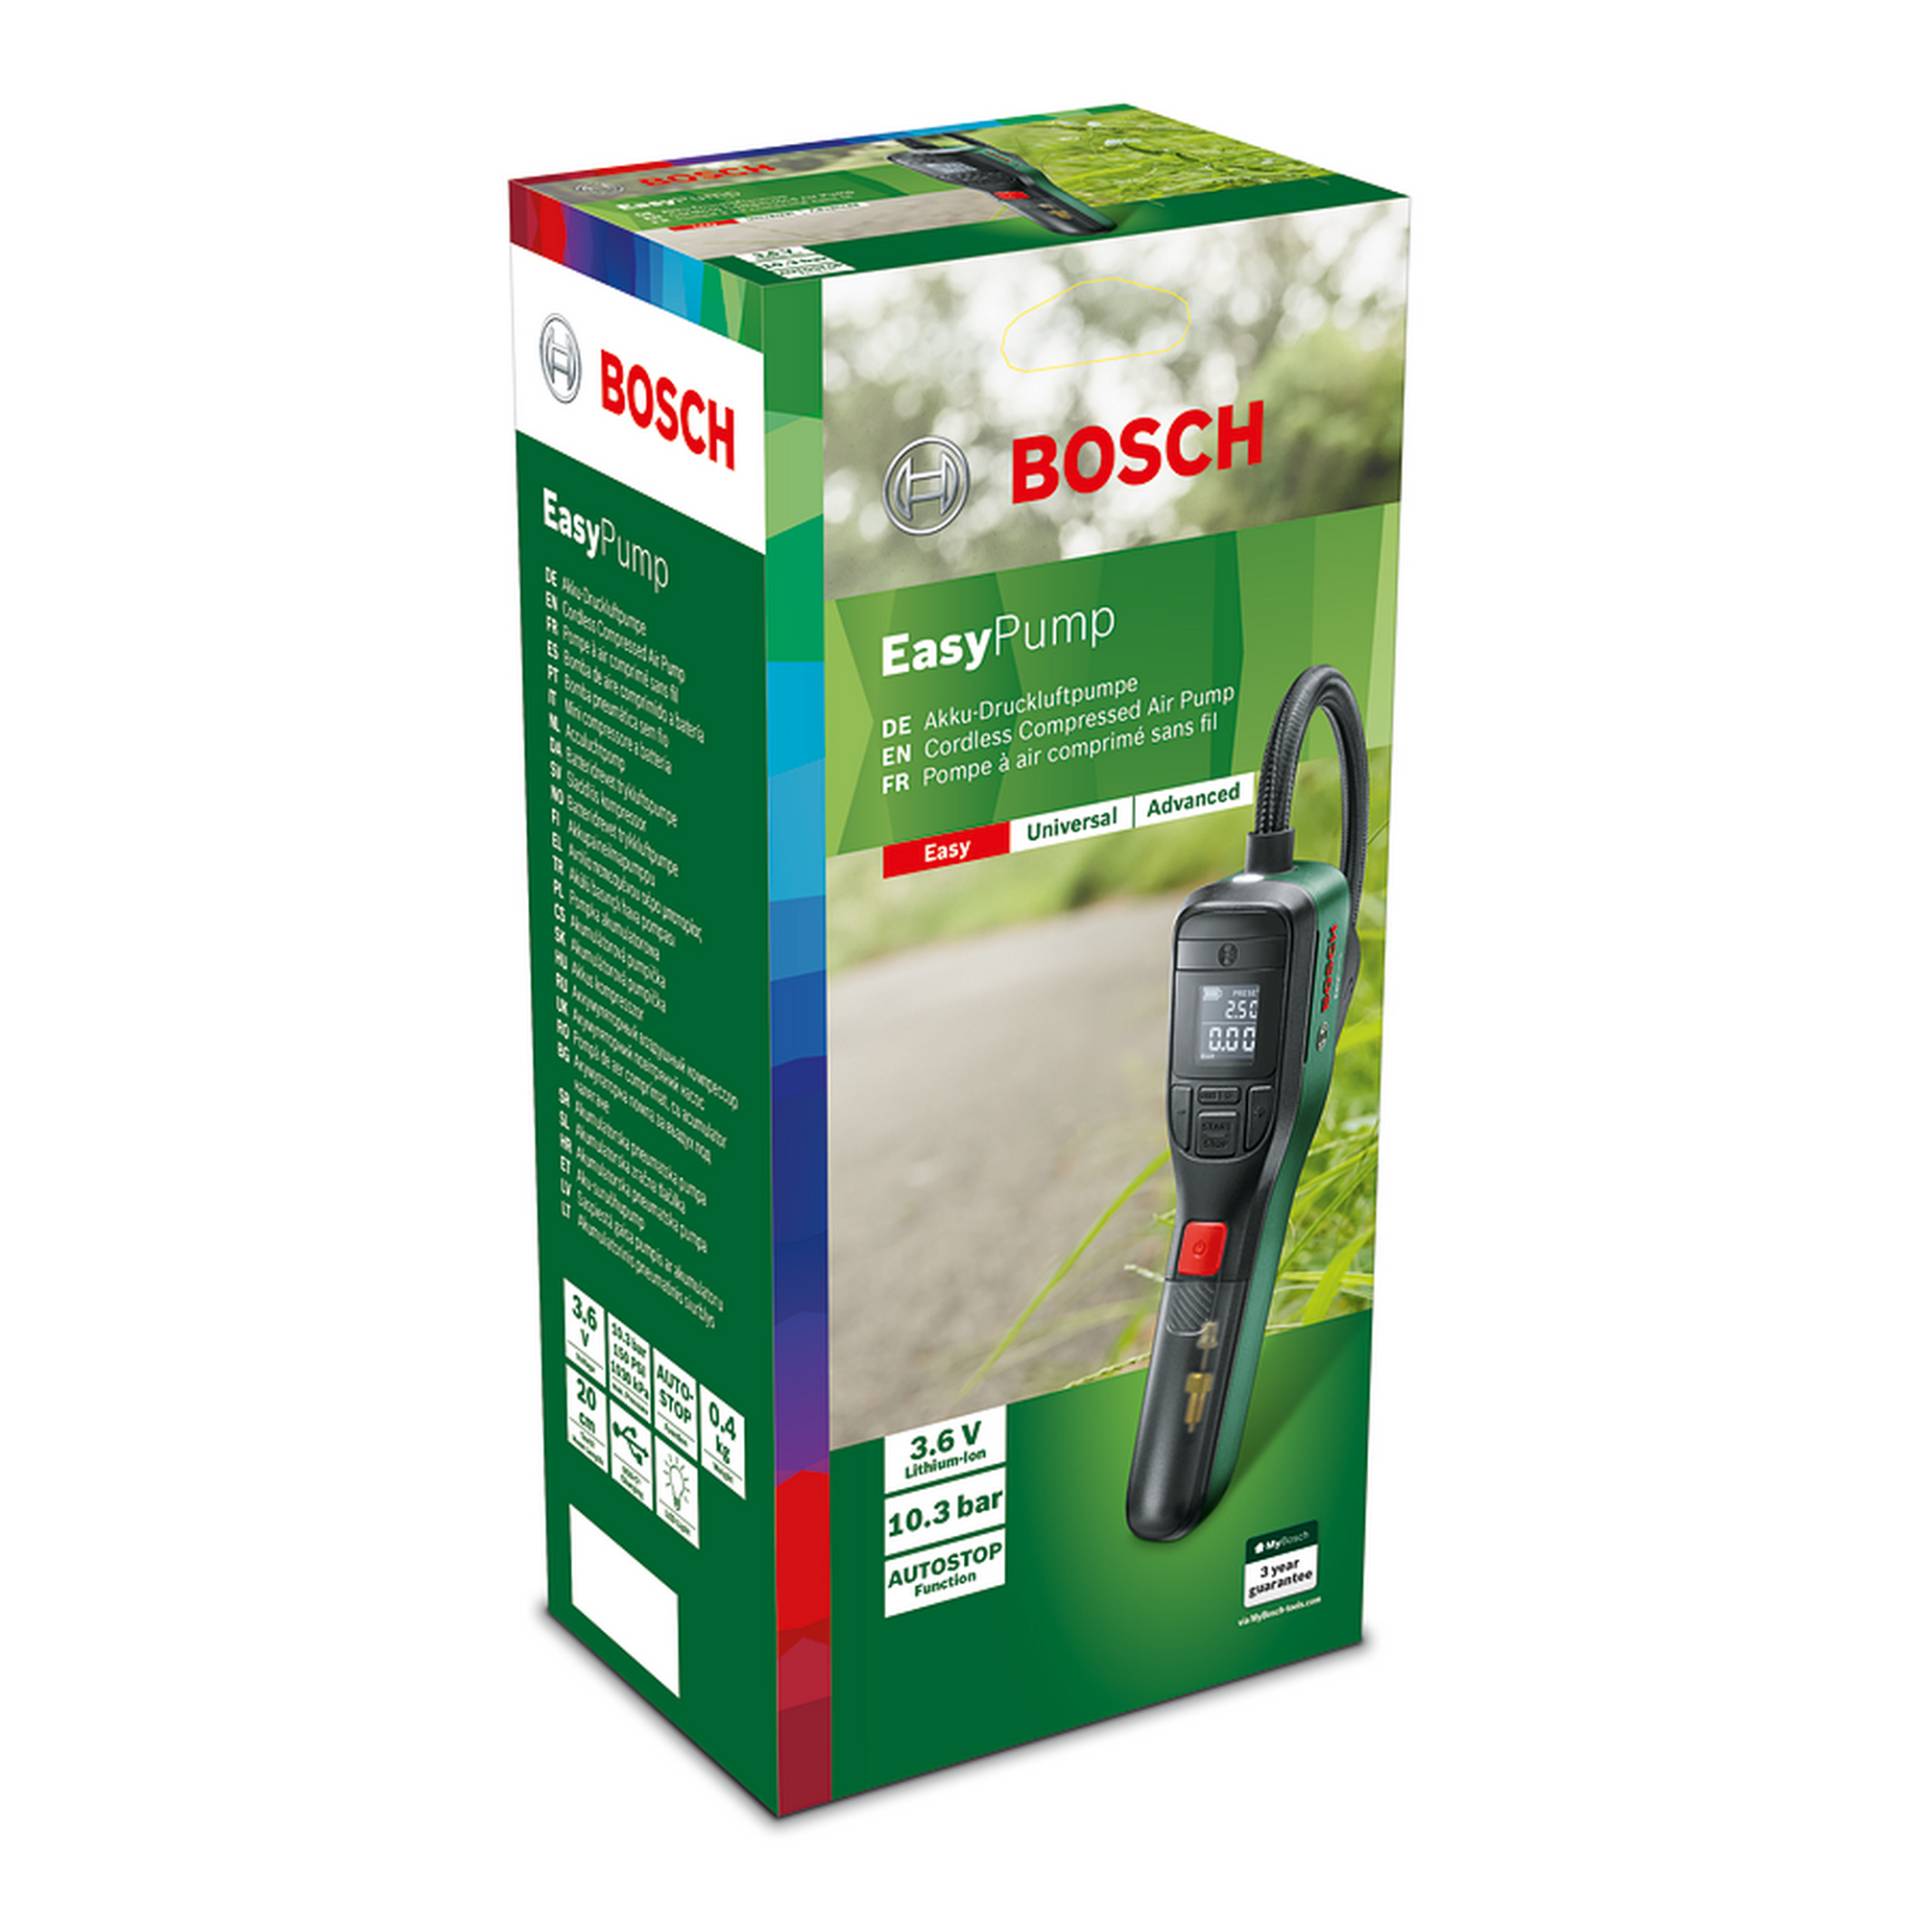 Bosch Akku-Druckluftpumpe 'EasyPump' von Bosch